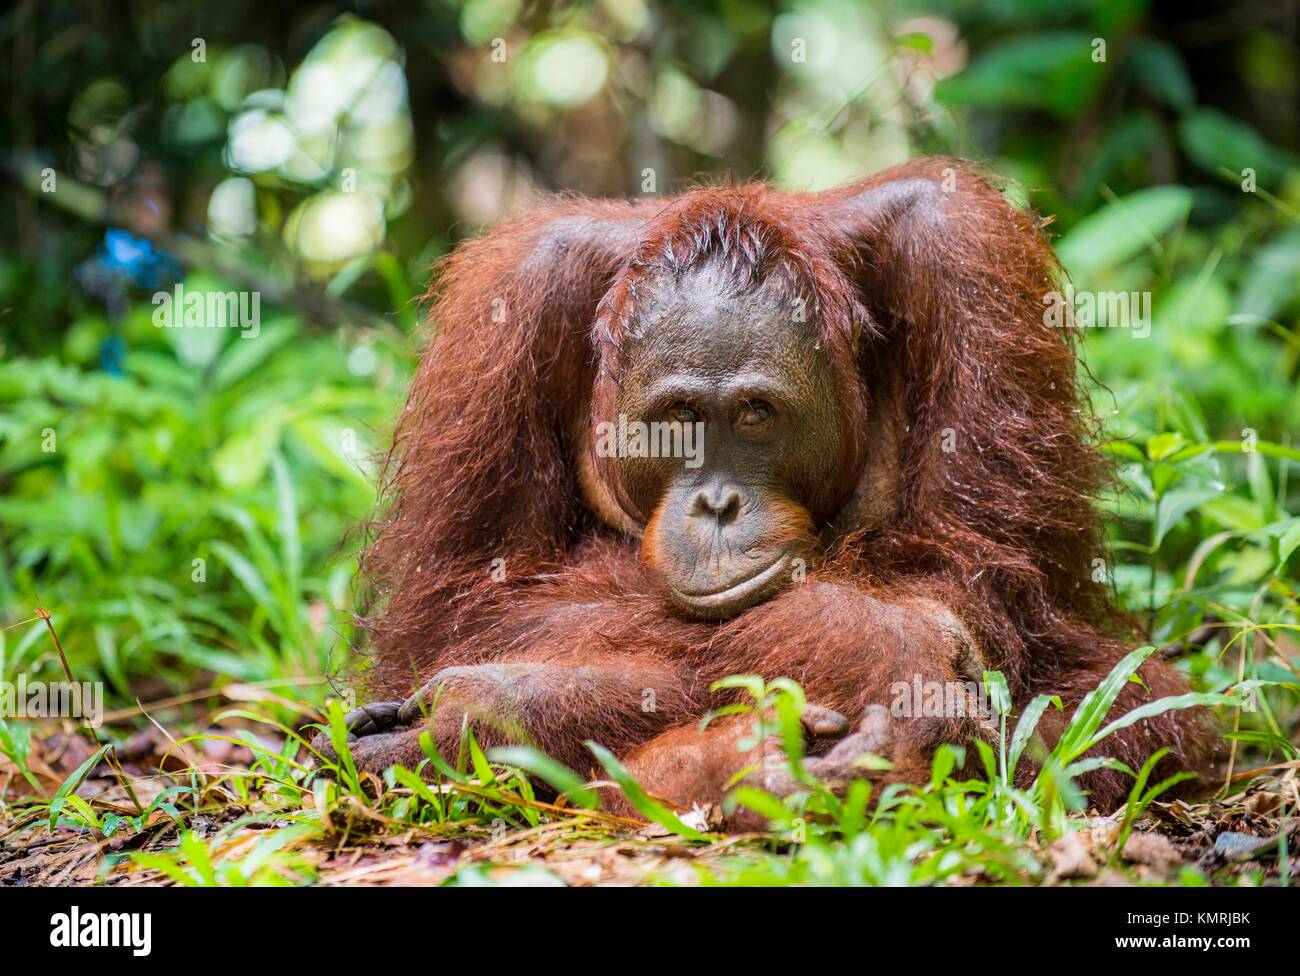 Bornean orangutan (Pongo pygmaeus) nella natura selvaggia. Central Bornean orangutan ( Pongo pygmaeus wurmbii ) in habitat naturali. Foto Stock